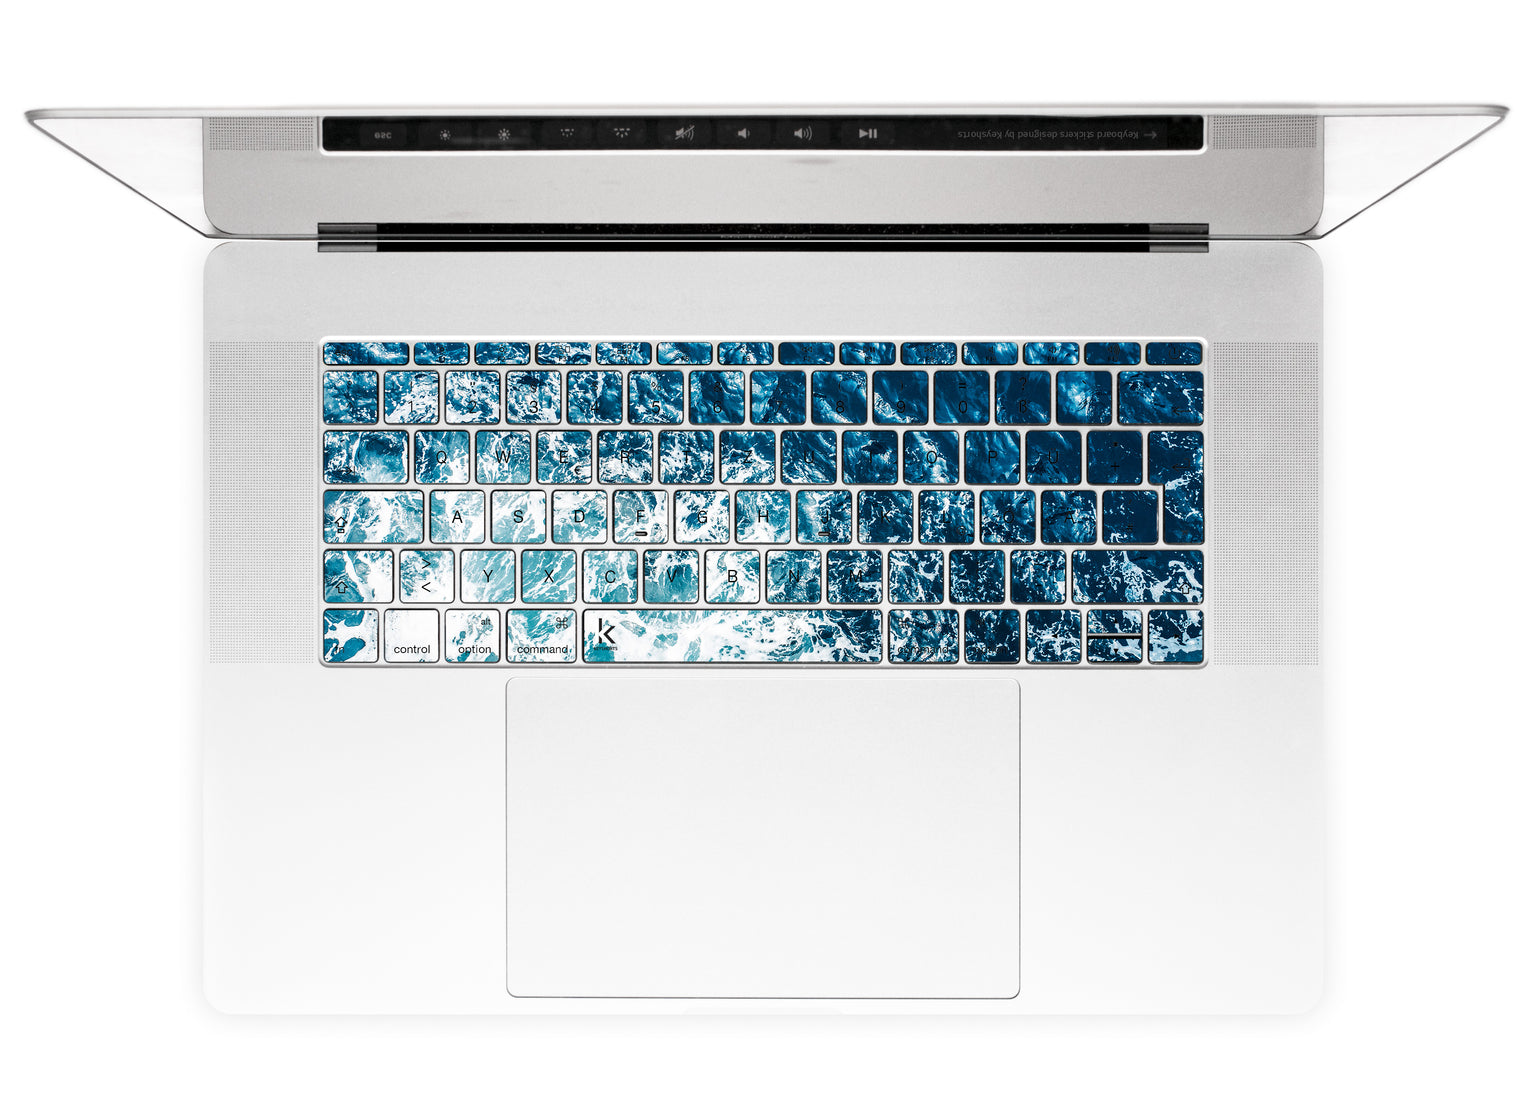 Gozo Wave MacBook Keyboard Stickers alternate German